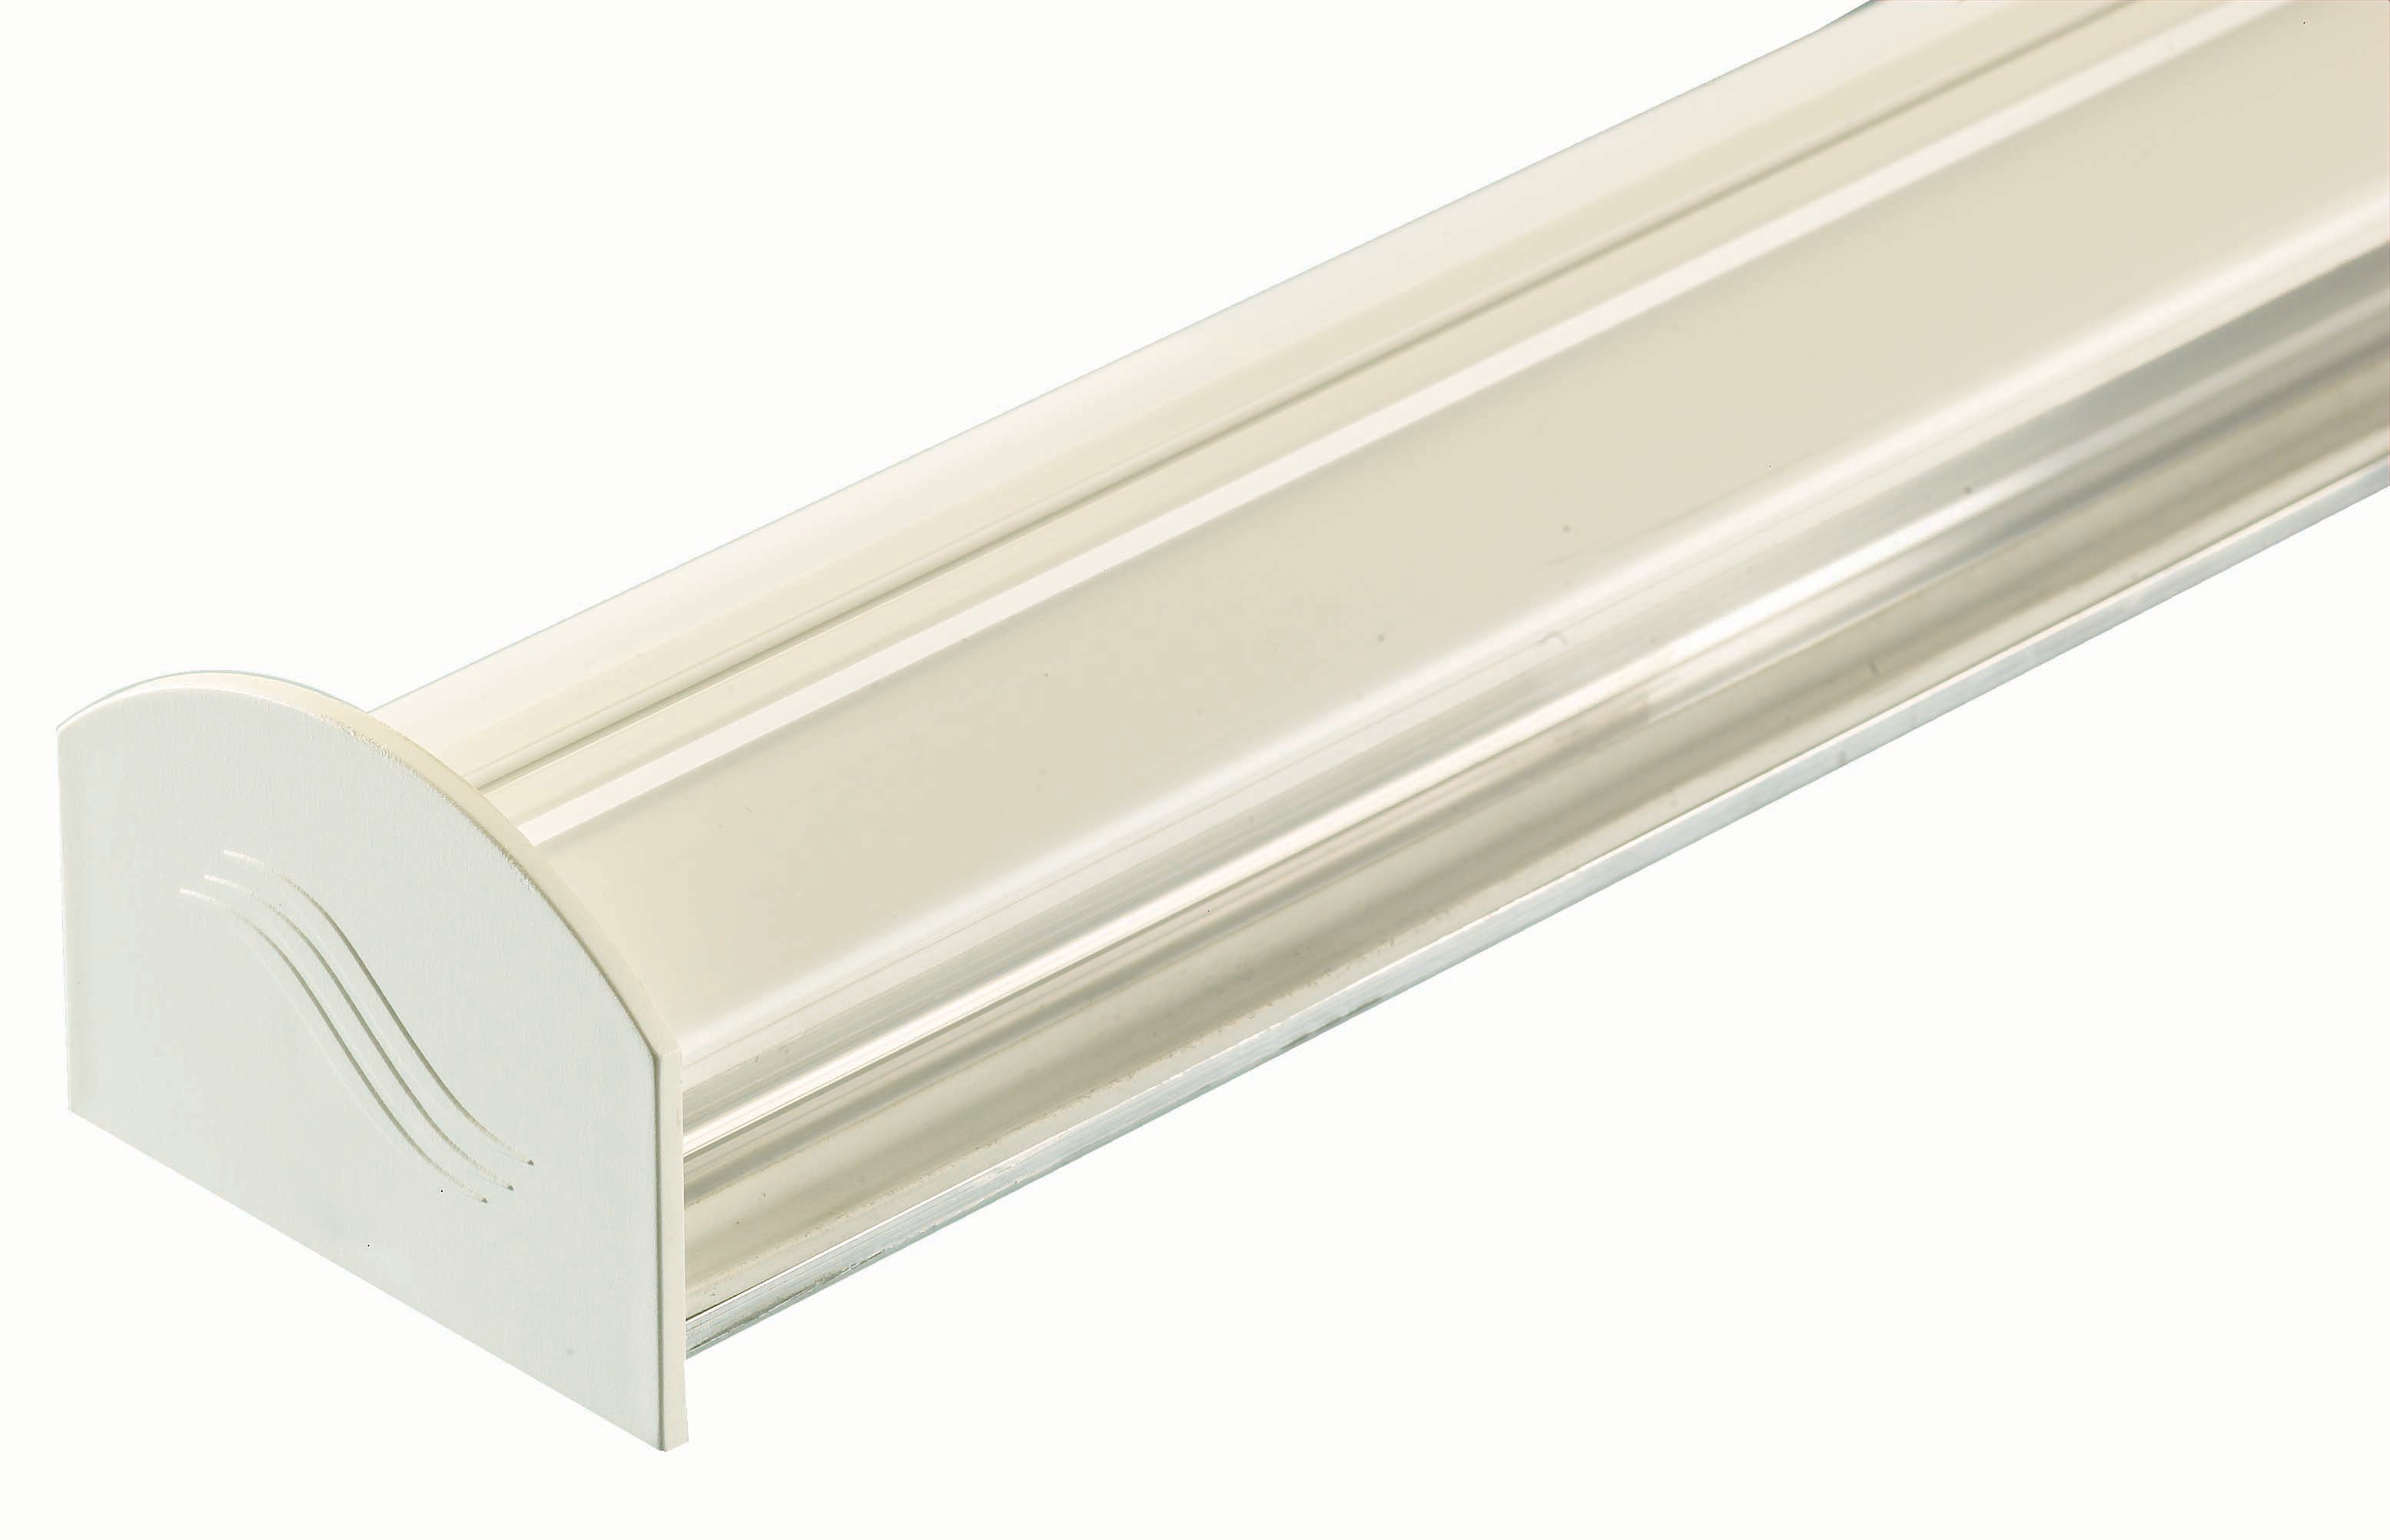 Image of Aluminium Glazing Bar Base and PVC Cap - White 3m